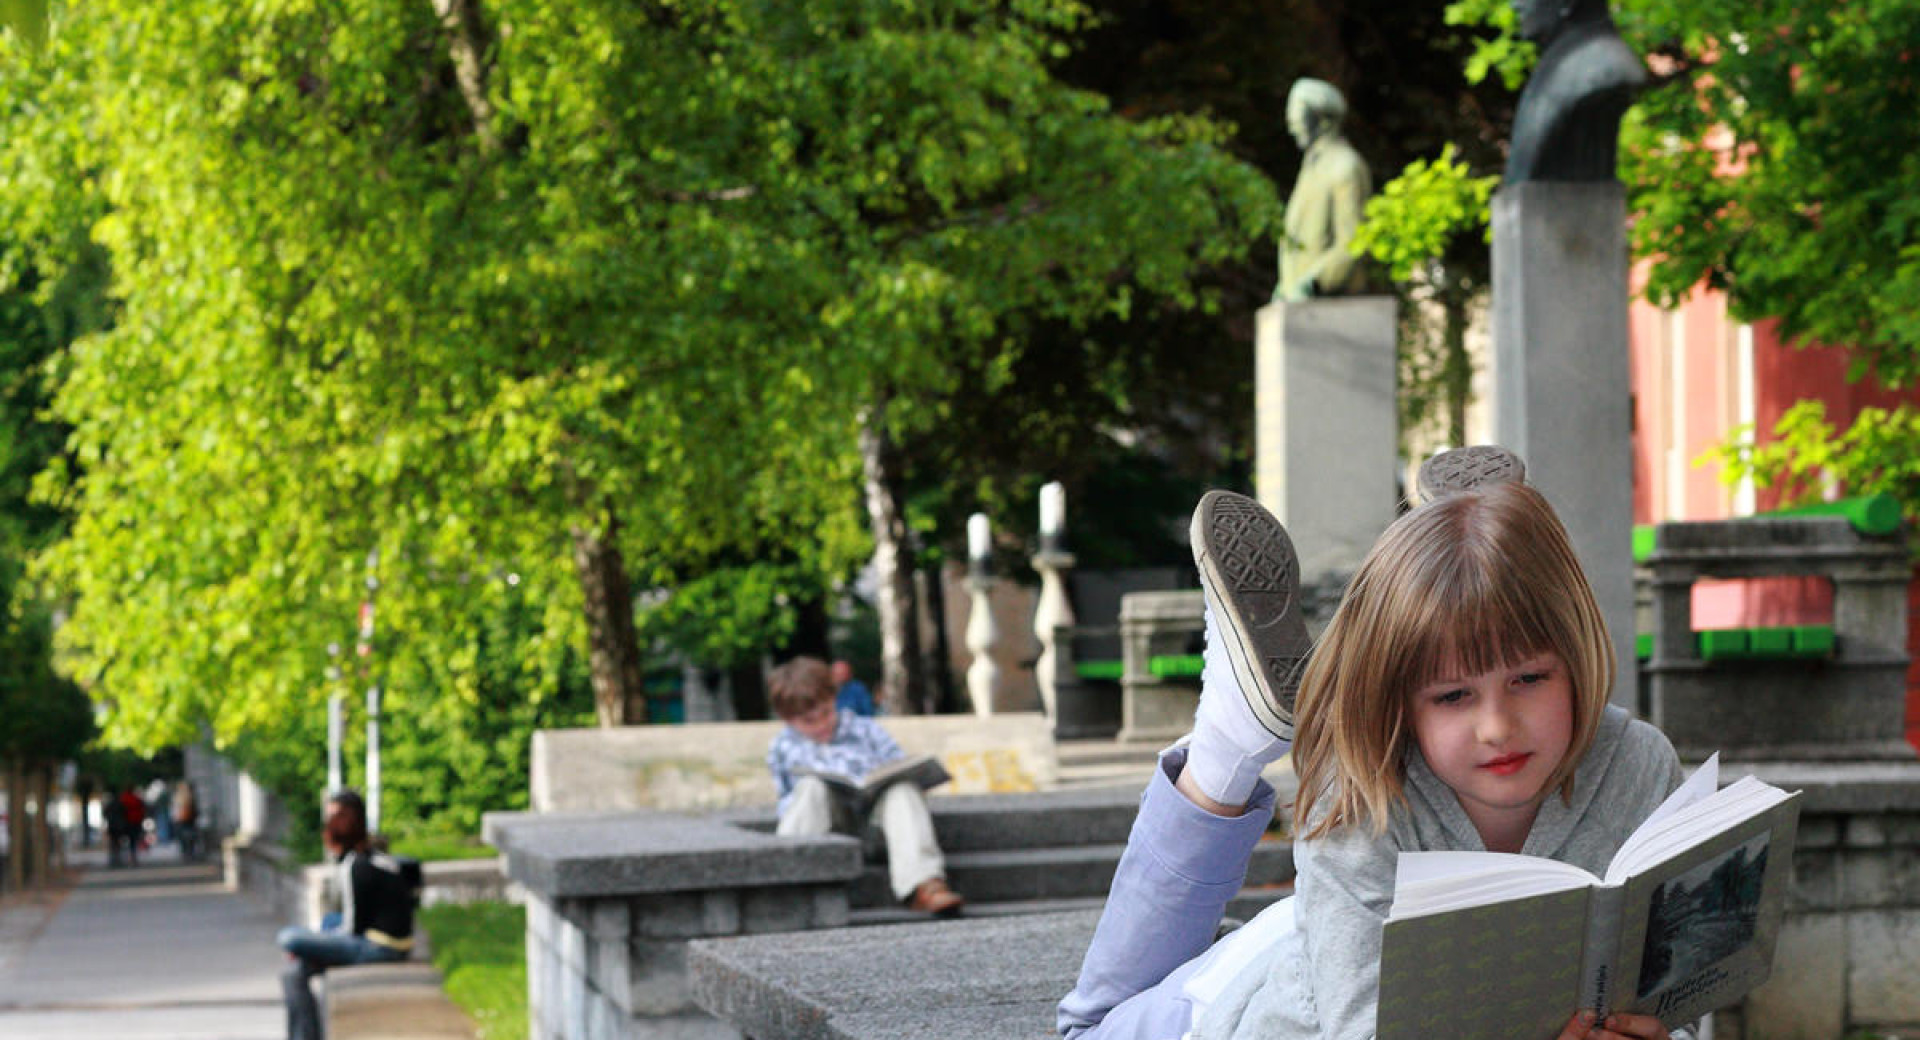 Otroka bereta knjigo v zelenem parku v Ljubljani.